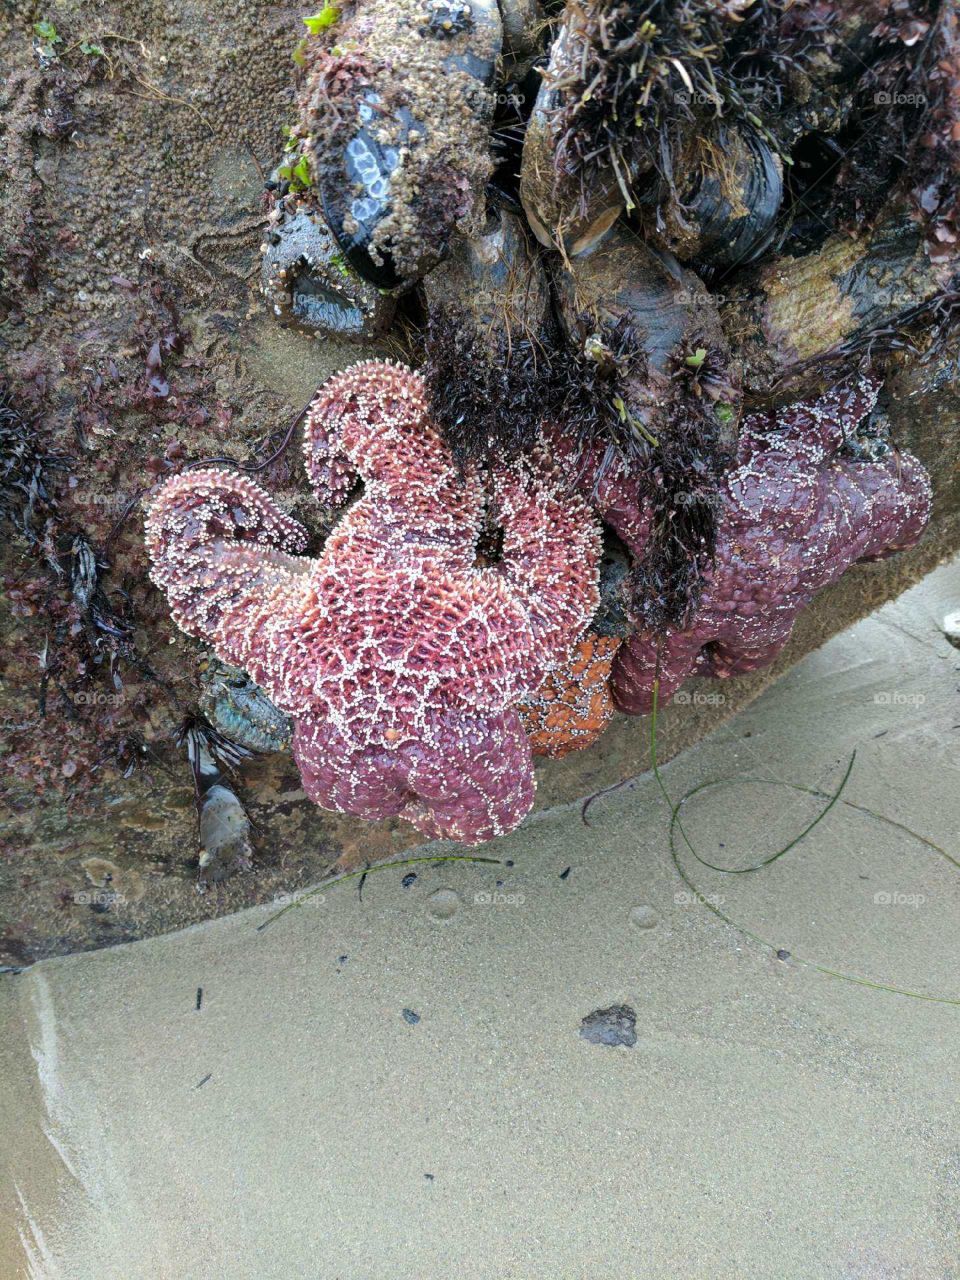 Starfish at beach in California